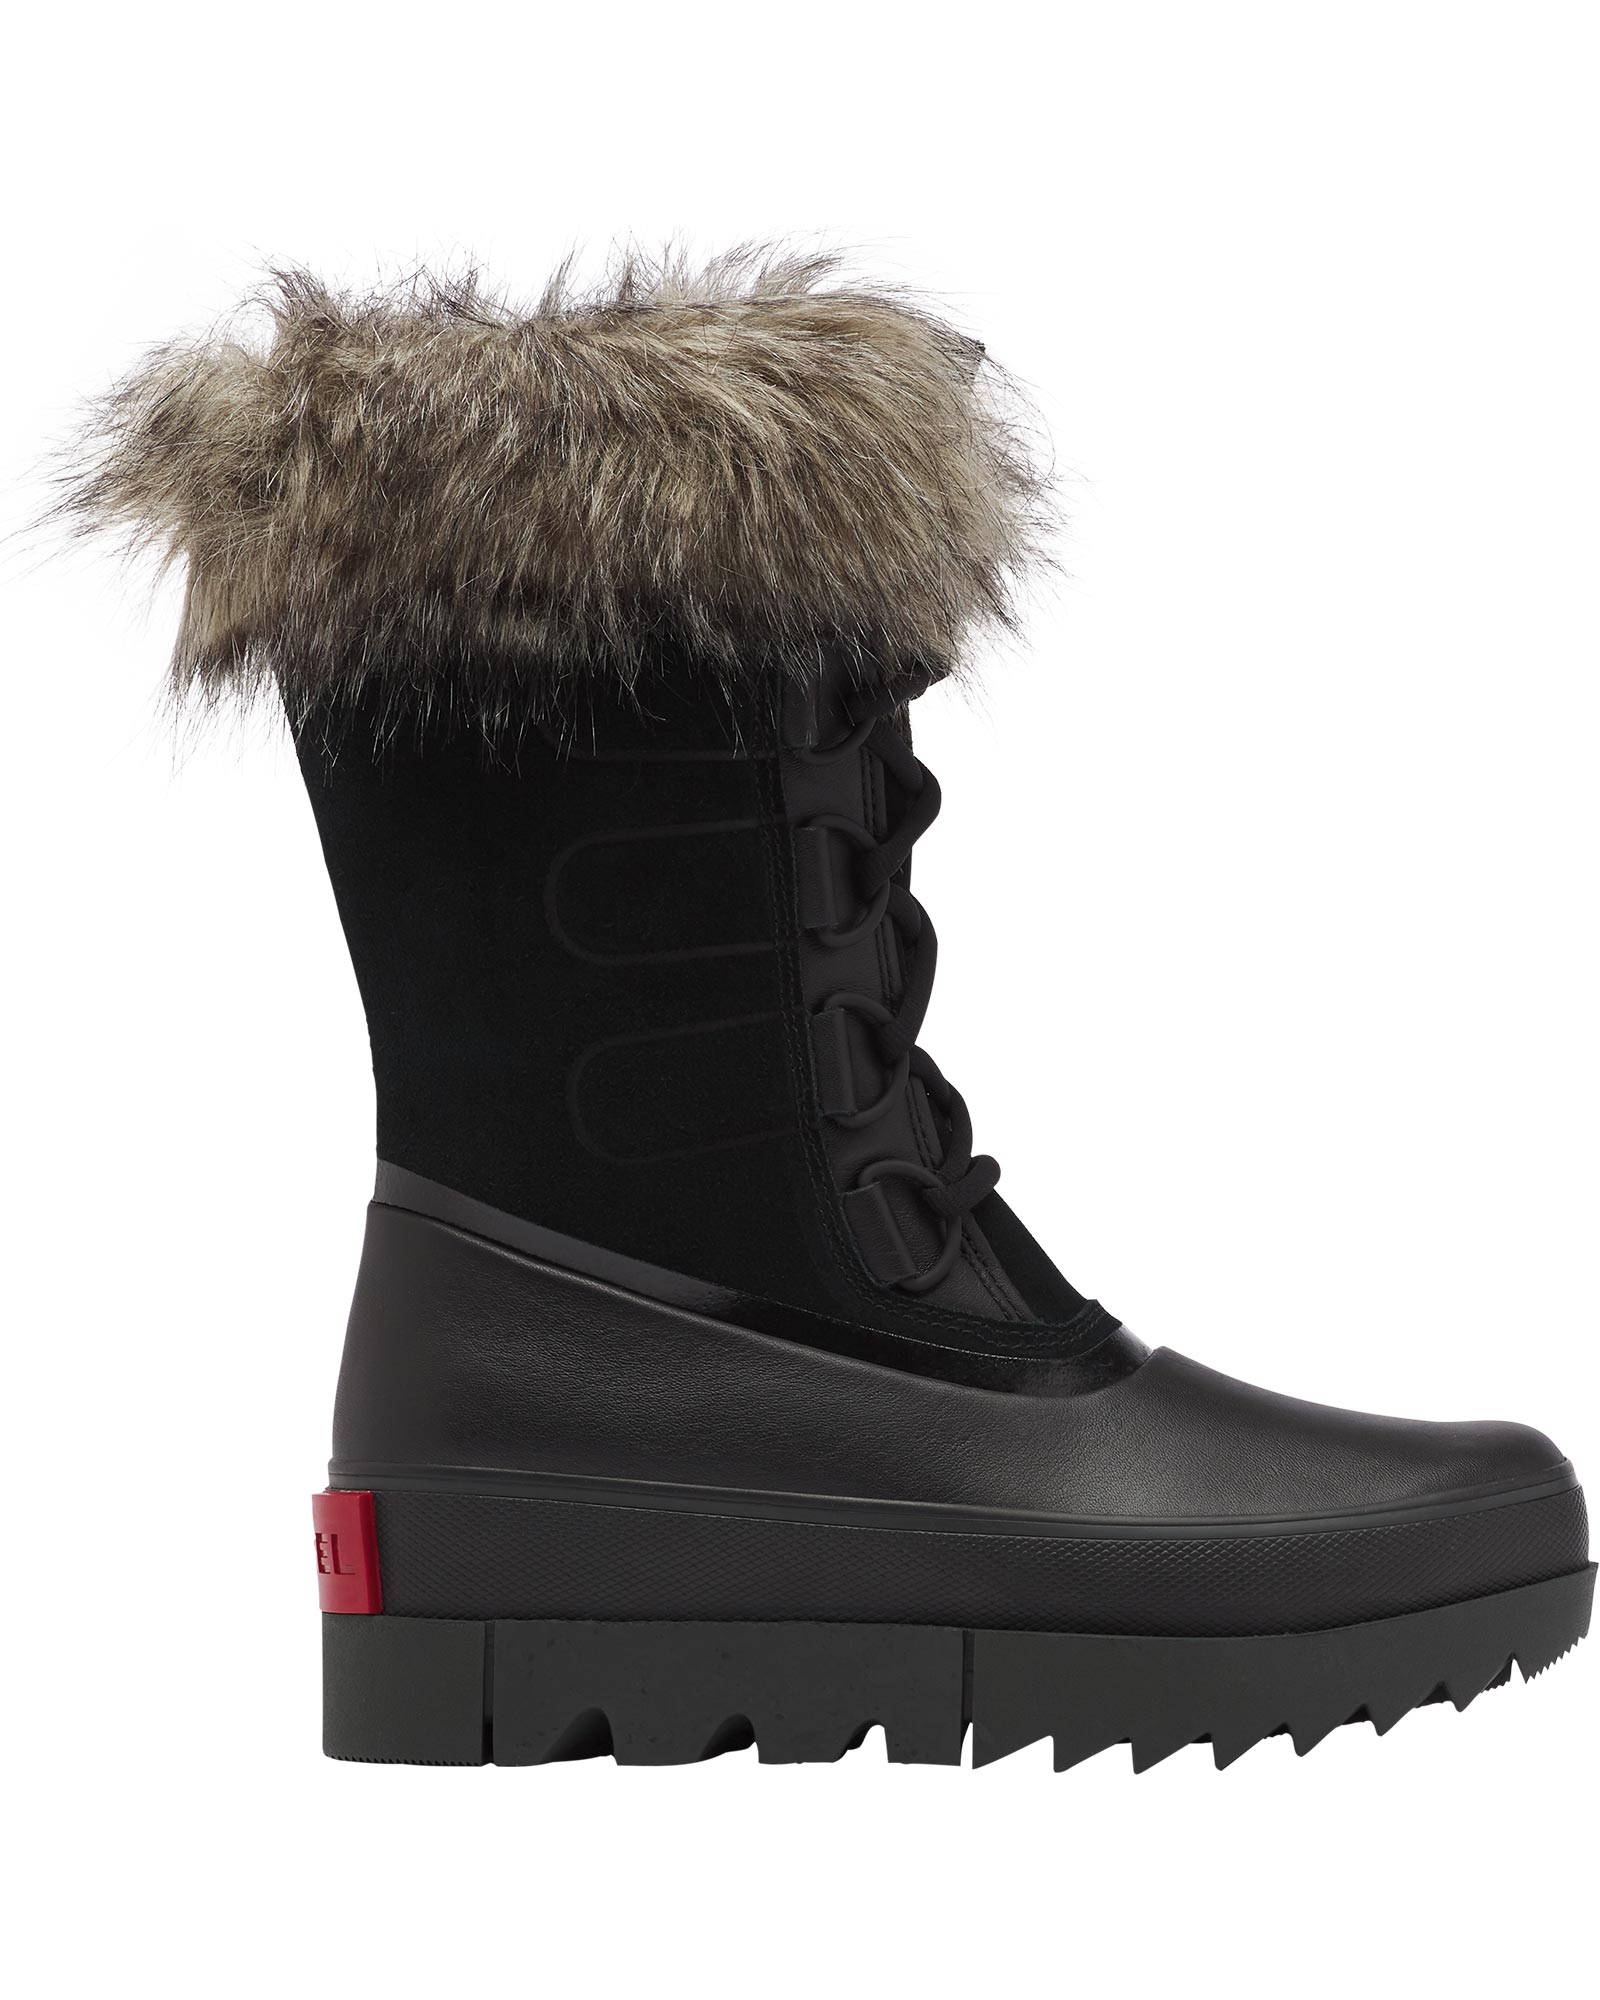 sorel women's joan of arctic insulated waterproof winter boots